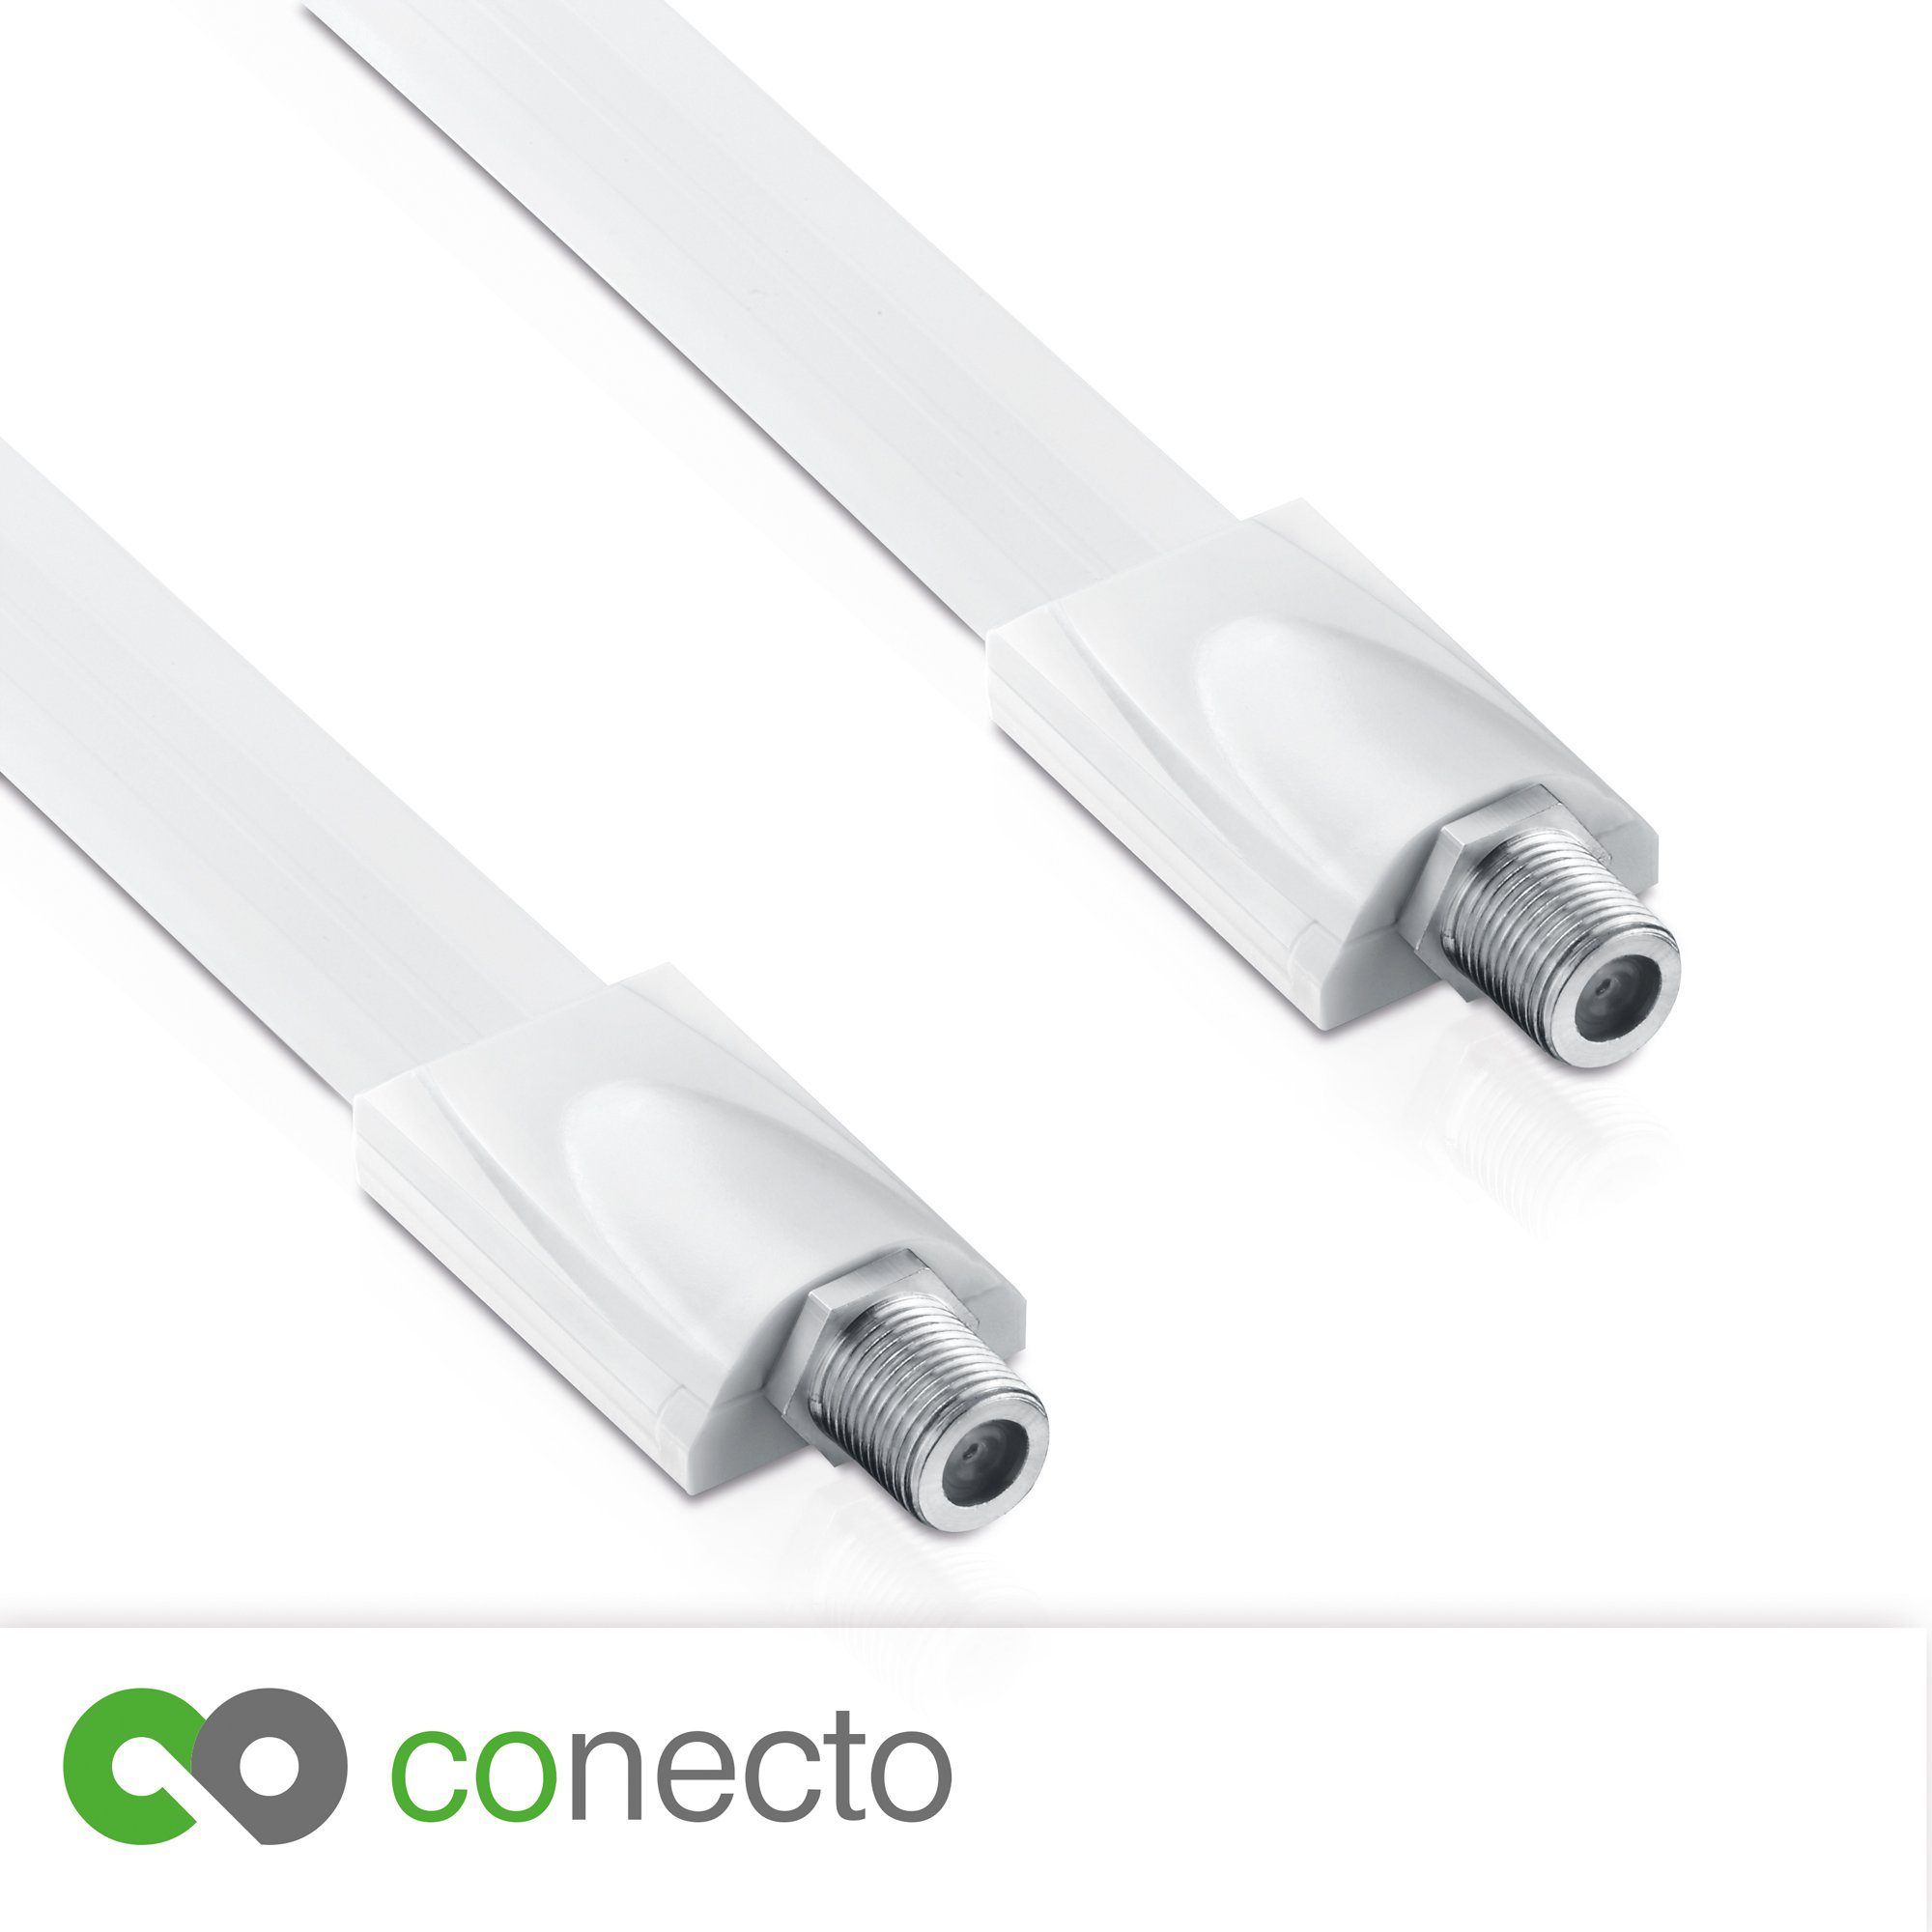 Fensterdurchführung conecto (F-Kupplu conecto 2x Premium für SAT Kabel SAT-Kabel koaxial